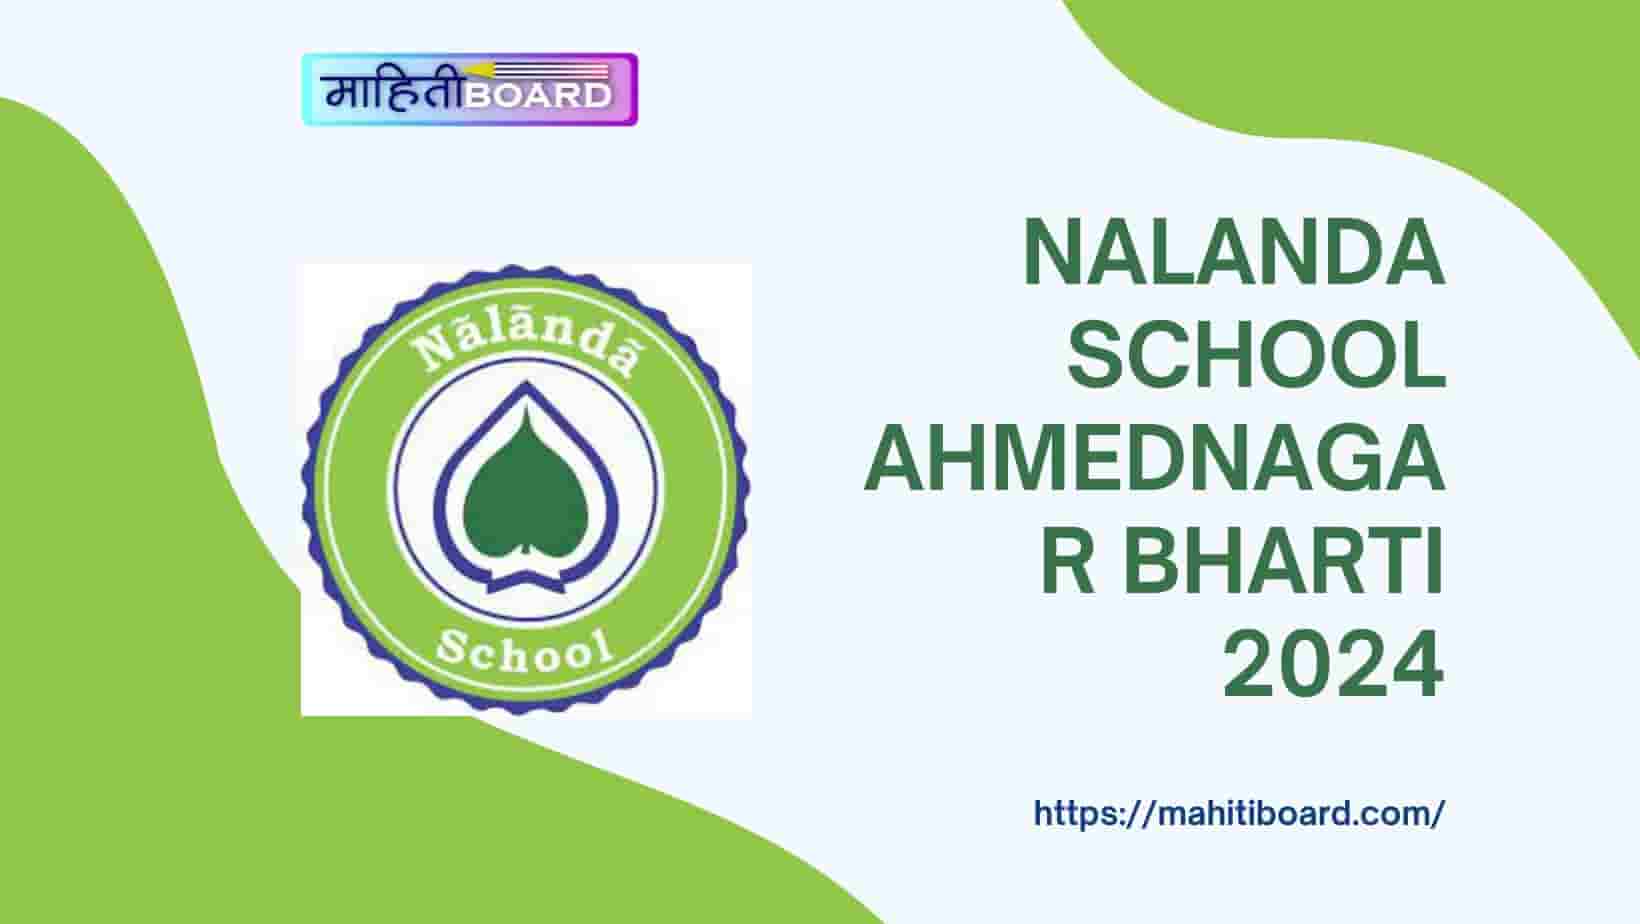 Nalanda School Ahmednagar Bharti 2024